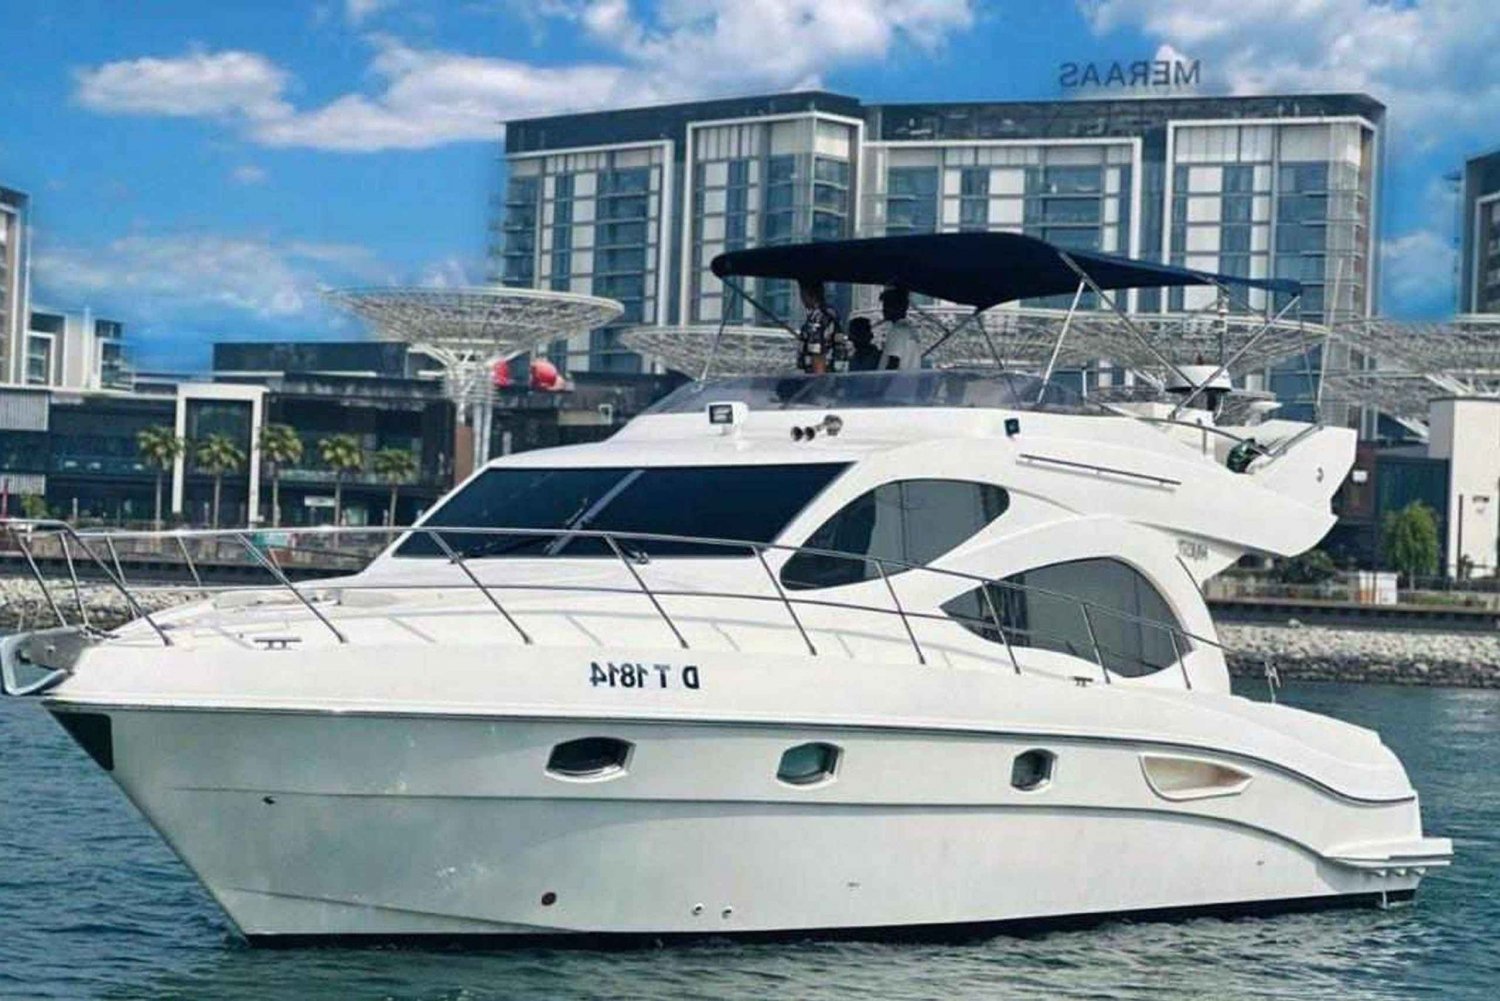 Dubai: Crociera privata di lusso su uno yacht di 50 piedi fino a 12 persone